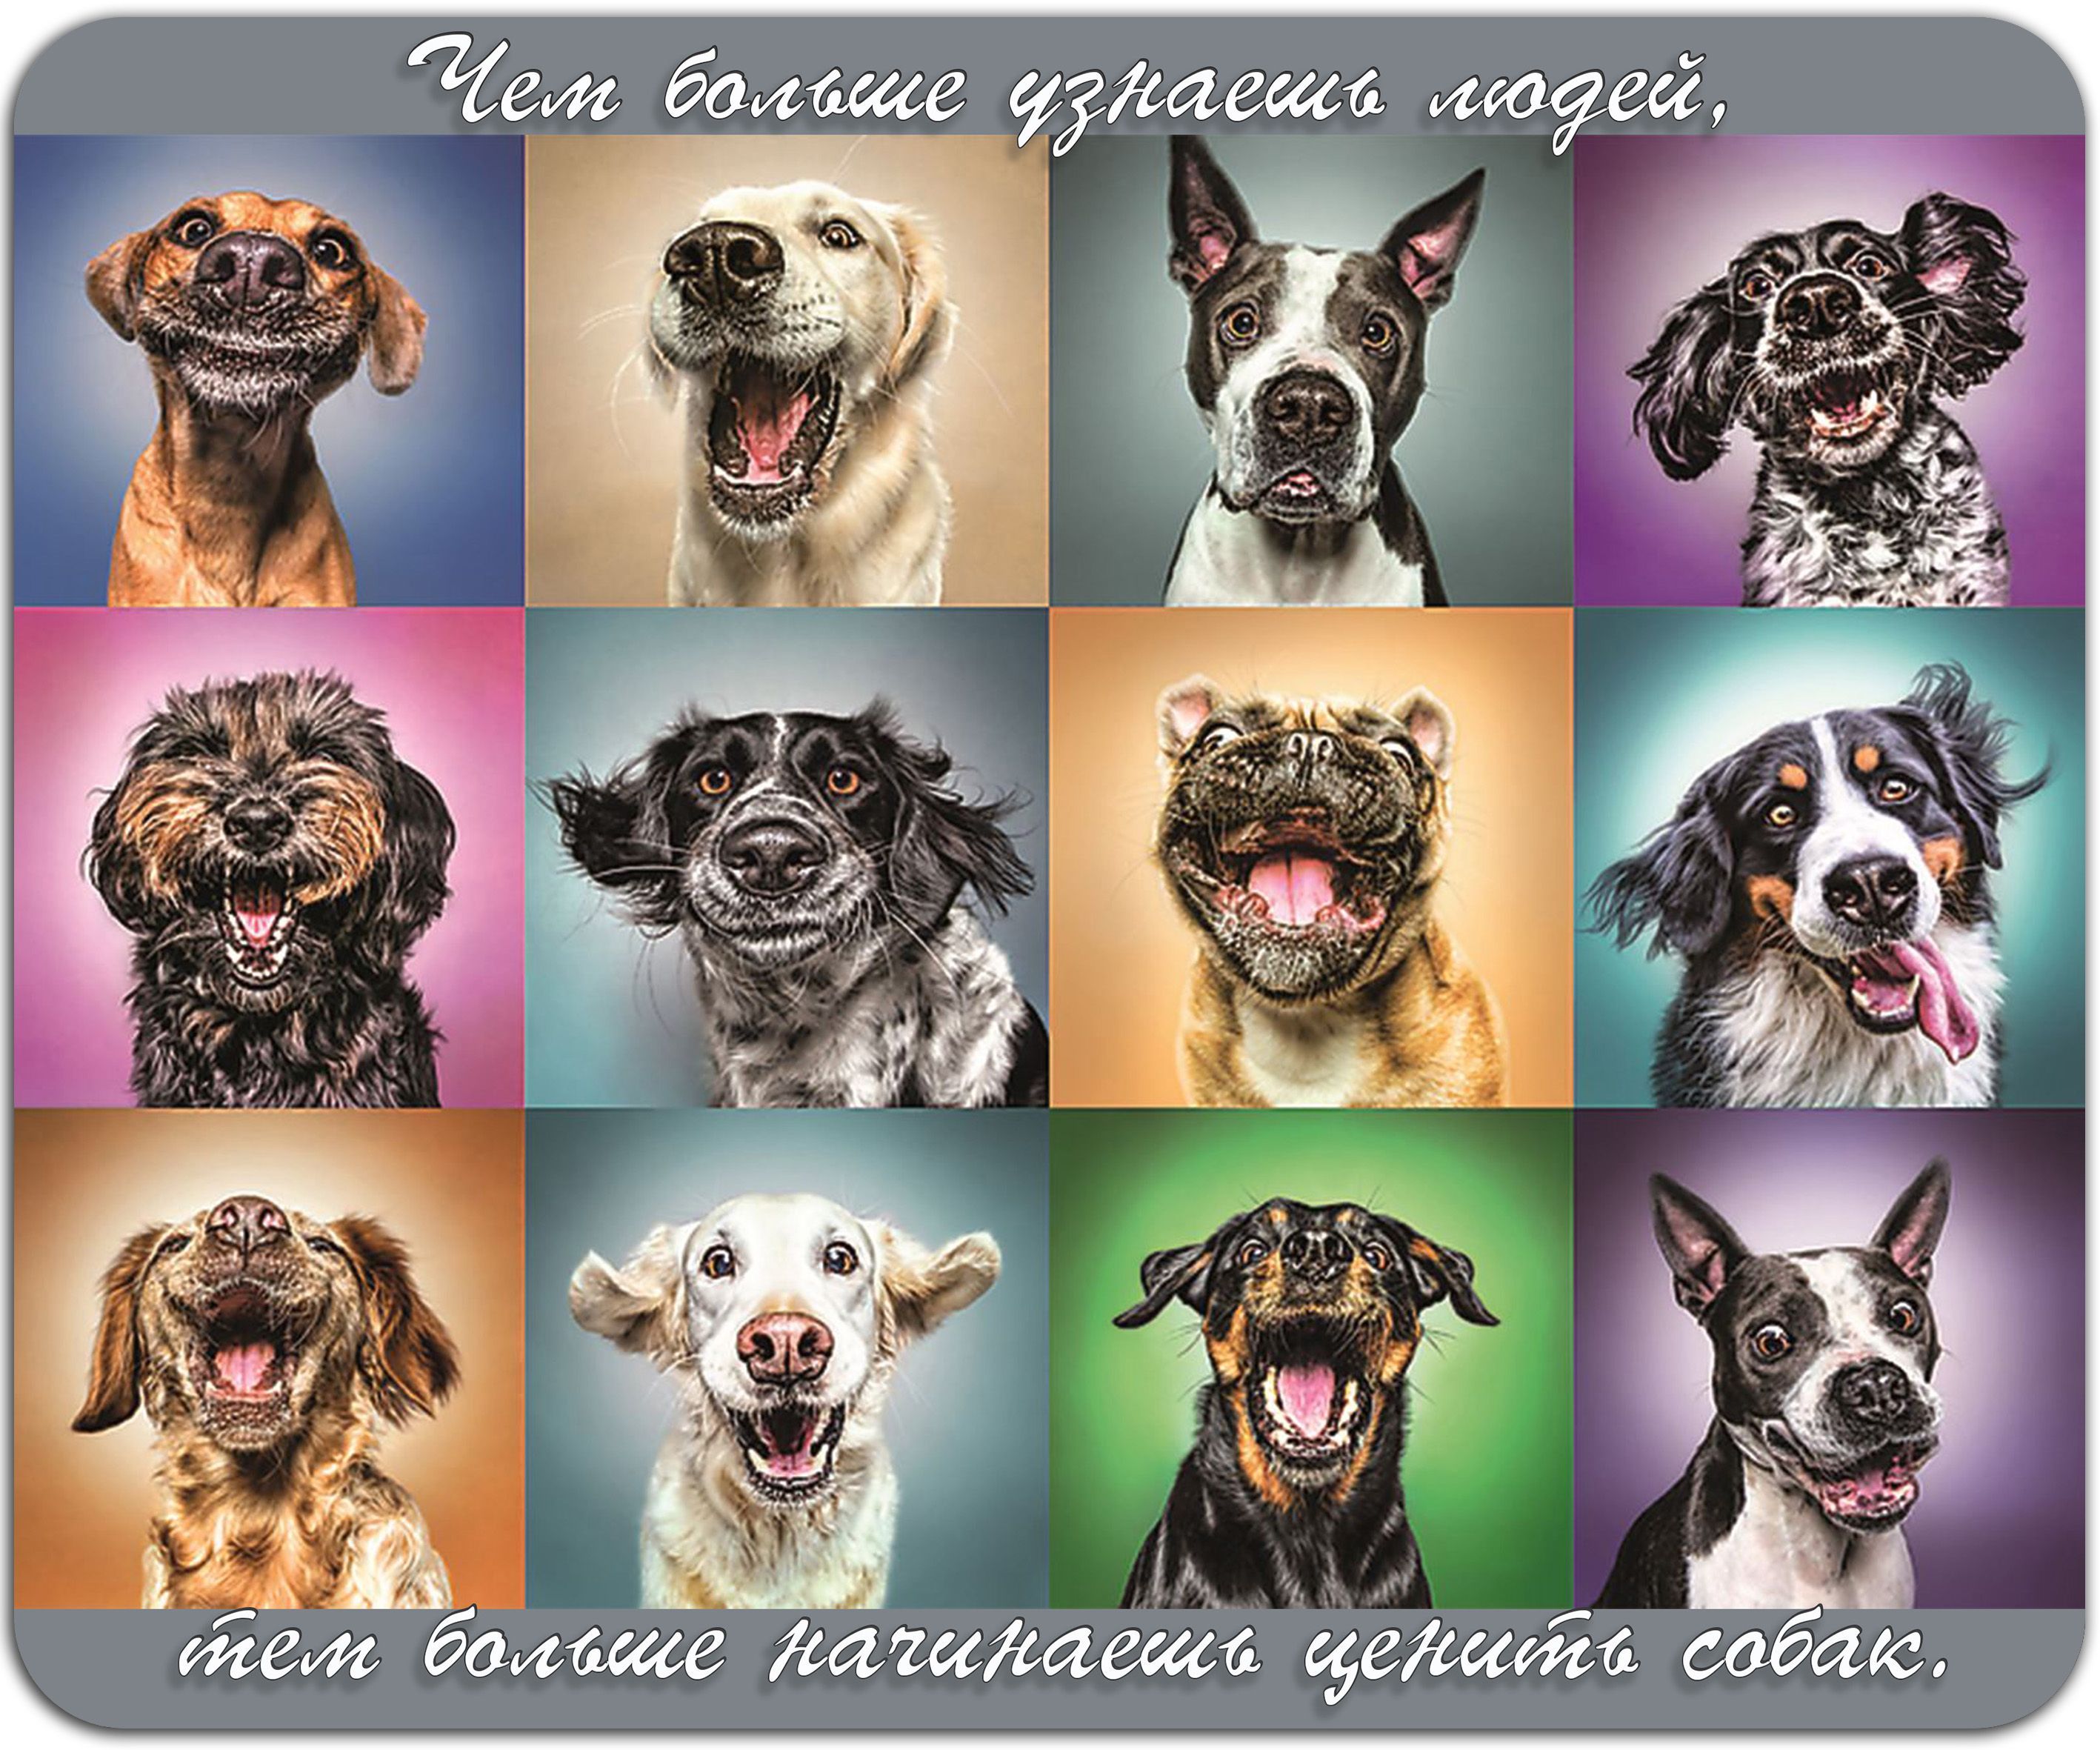 Постер собаки. Собаки коллаж. Эмоциональные животные. Породы собак коллаж. Фотоколлаж собаки.